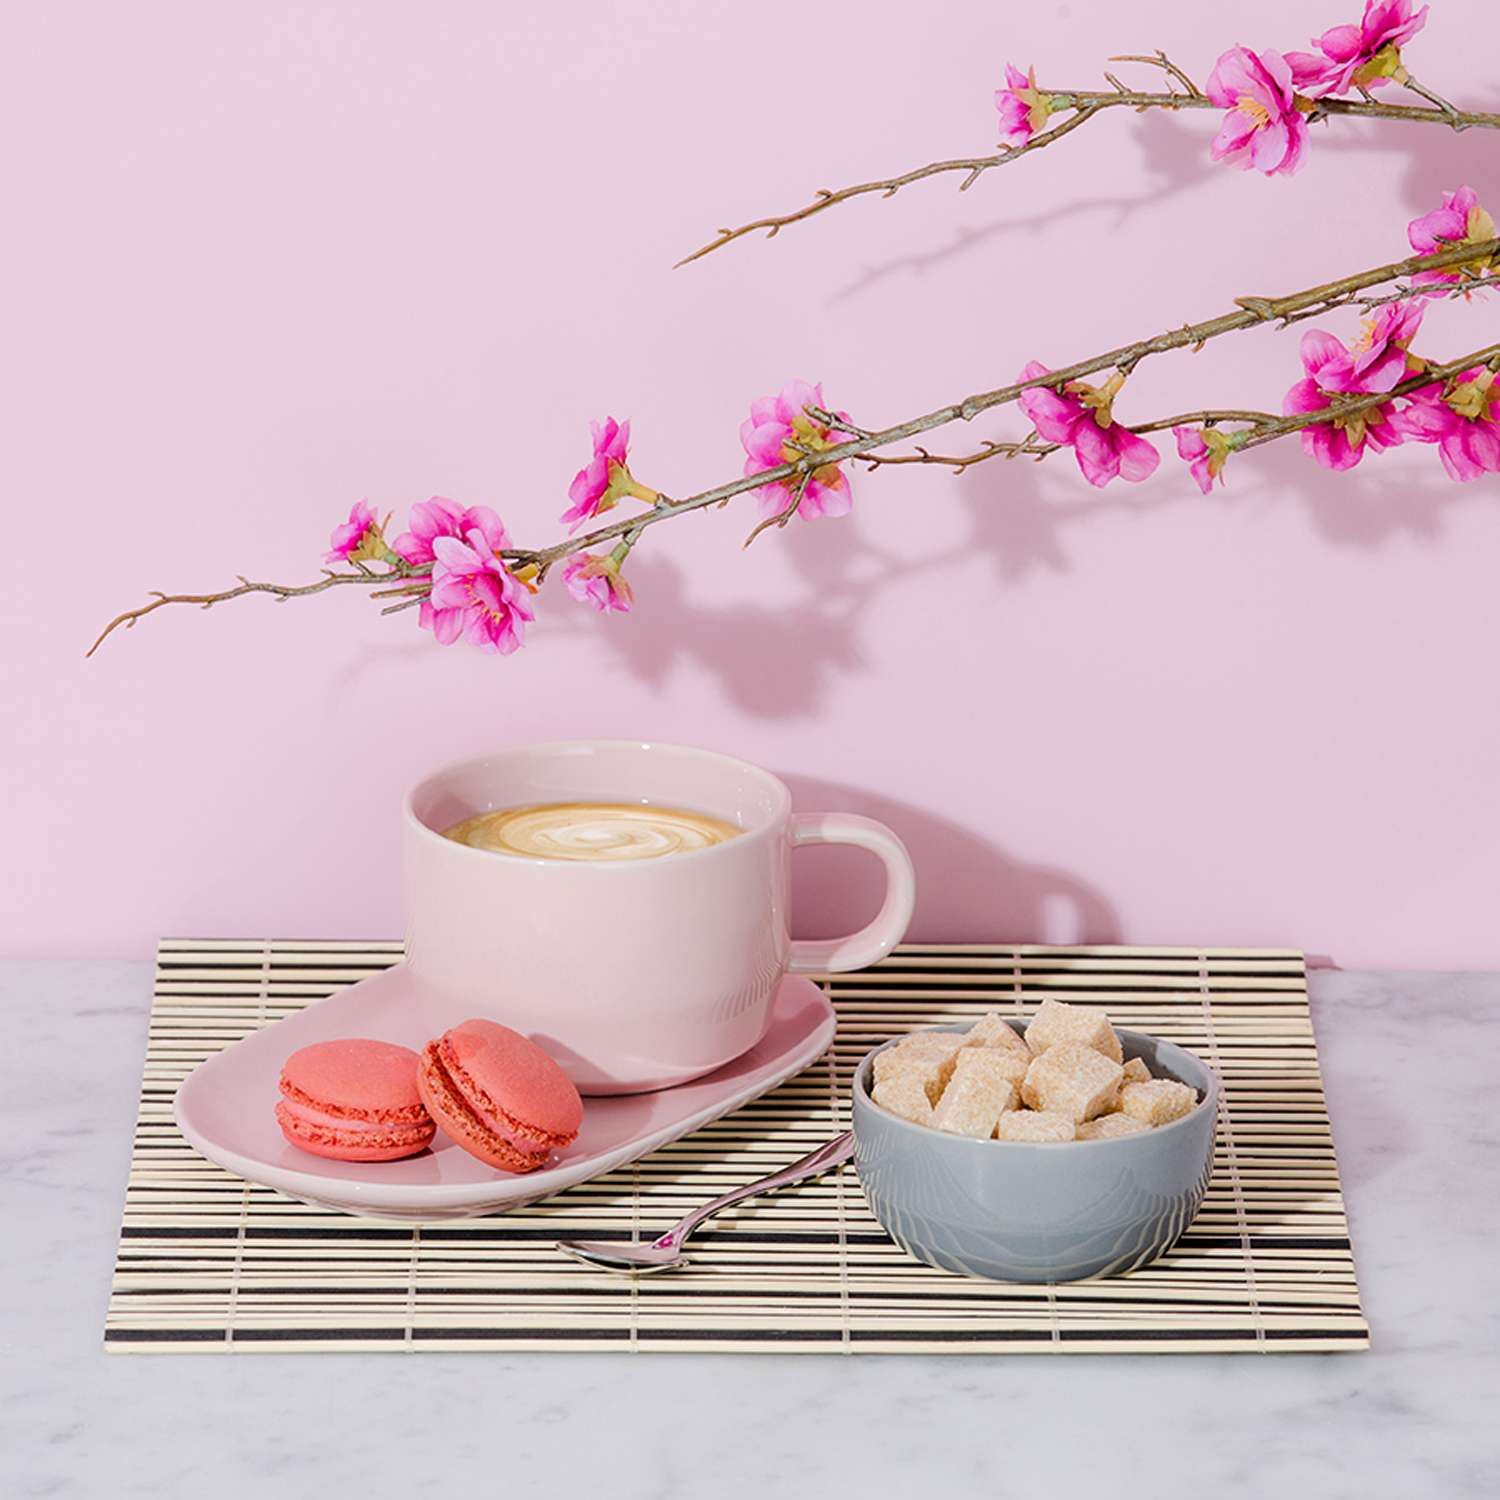 Тарелка Typhoon сервировочная Cafe Concept розовая - фото 4